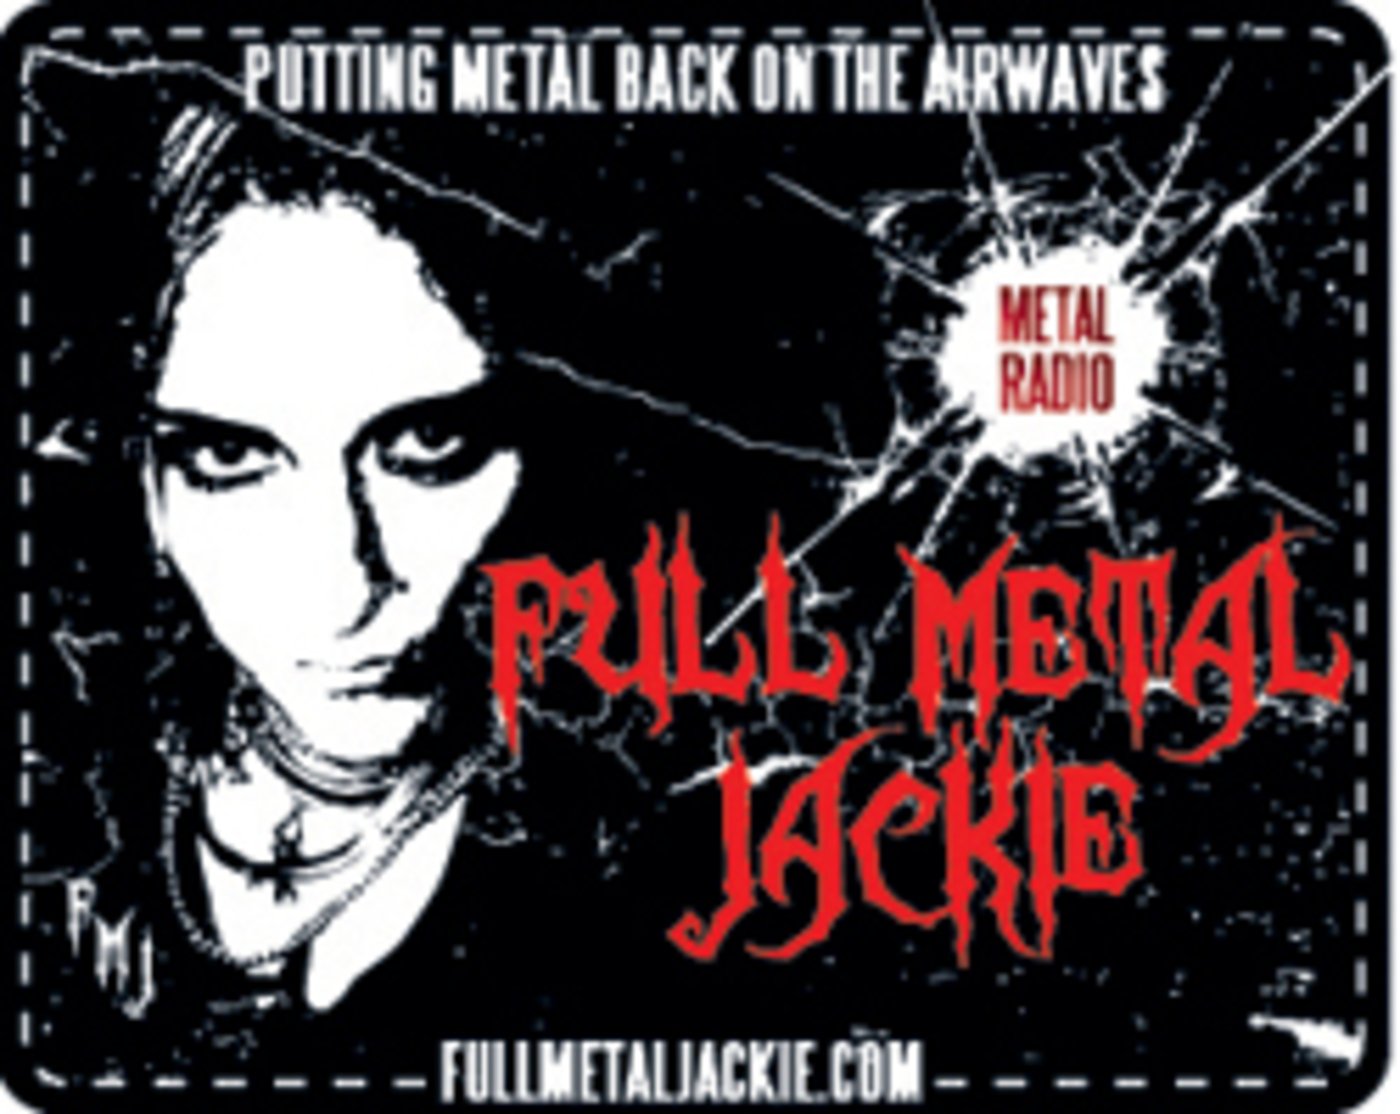 Jesse Leach of Killswitch Engage on Full Metal Jackie Radio